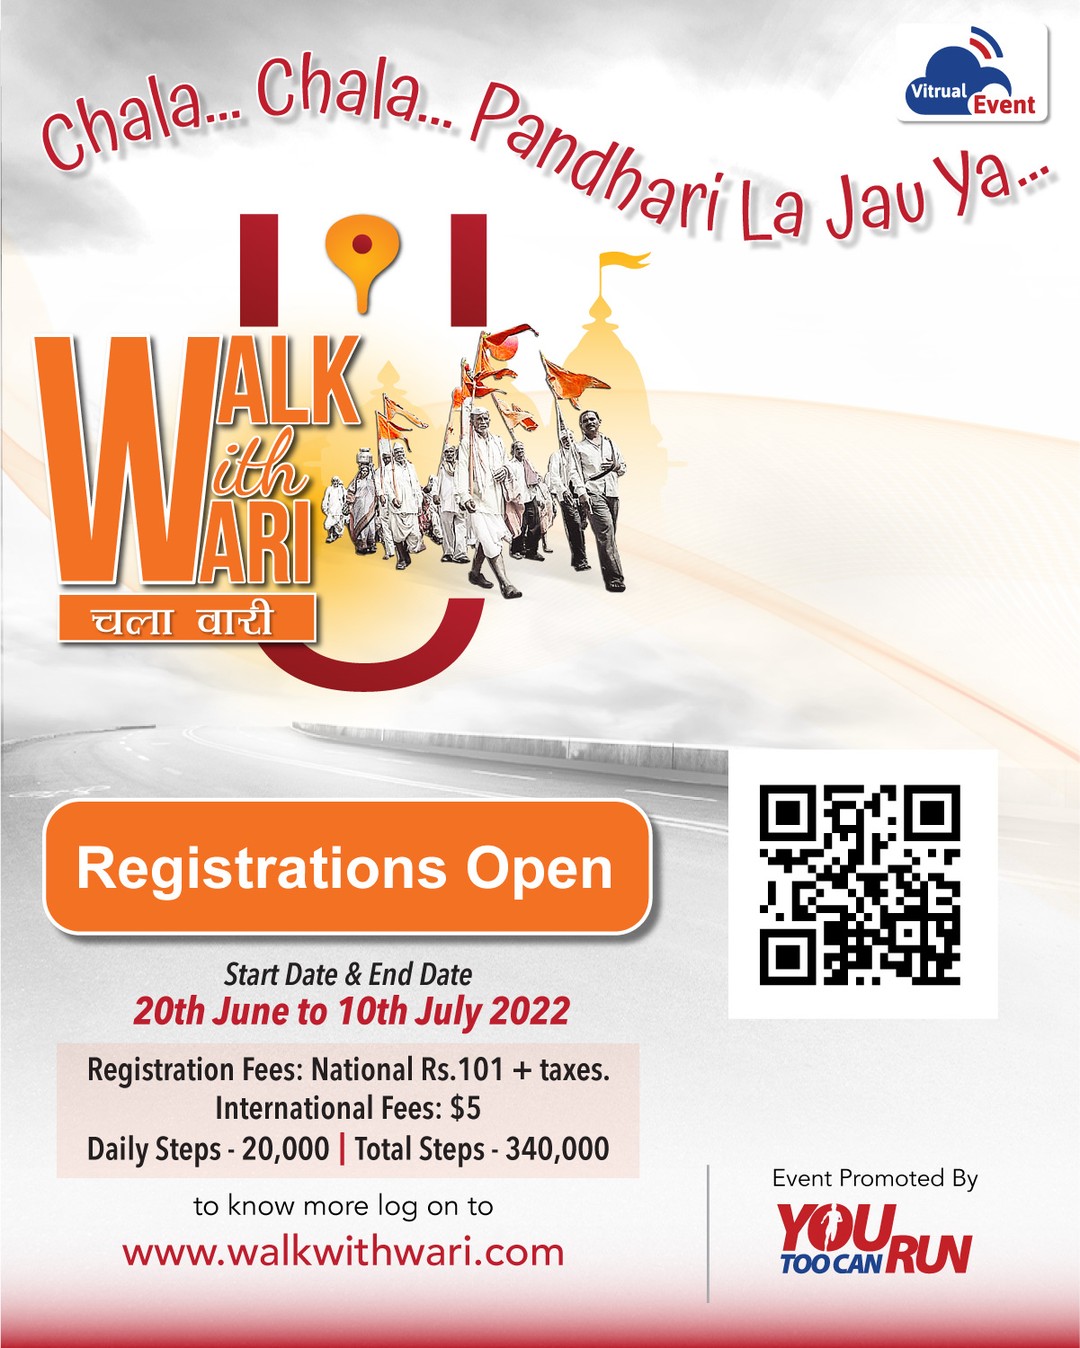 Walk With Wari - Virtual Event